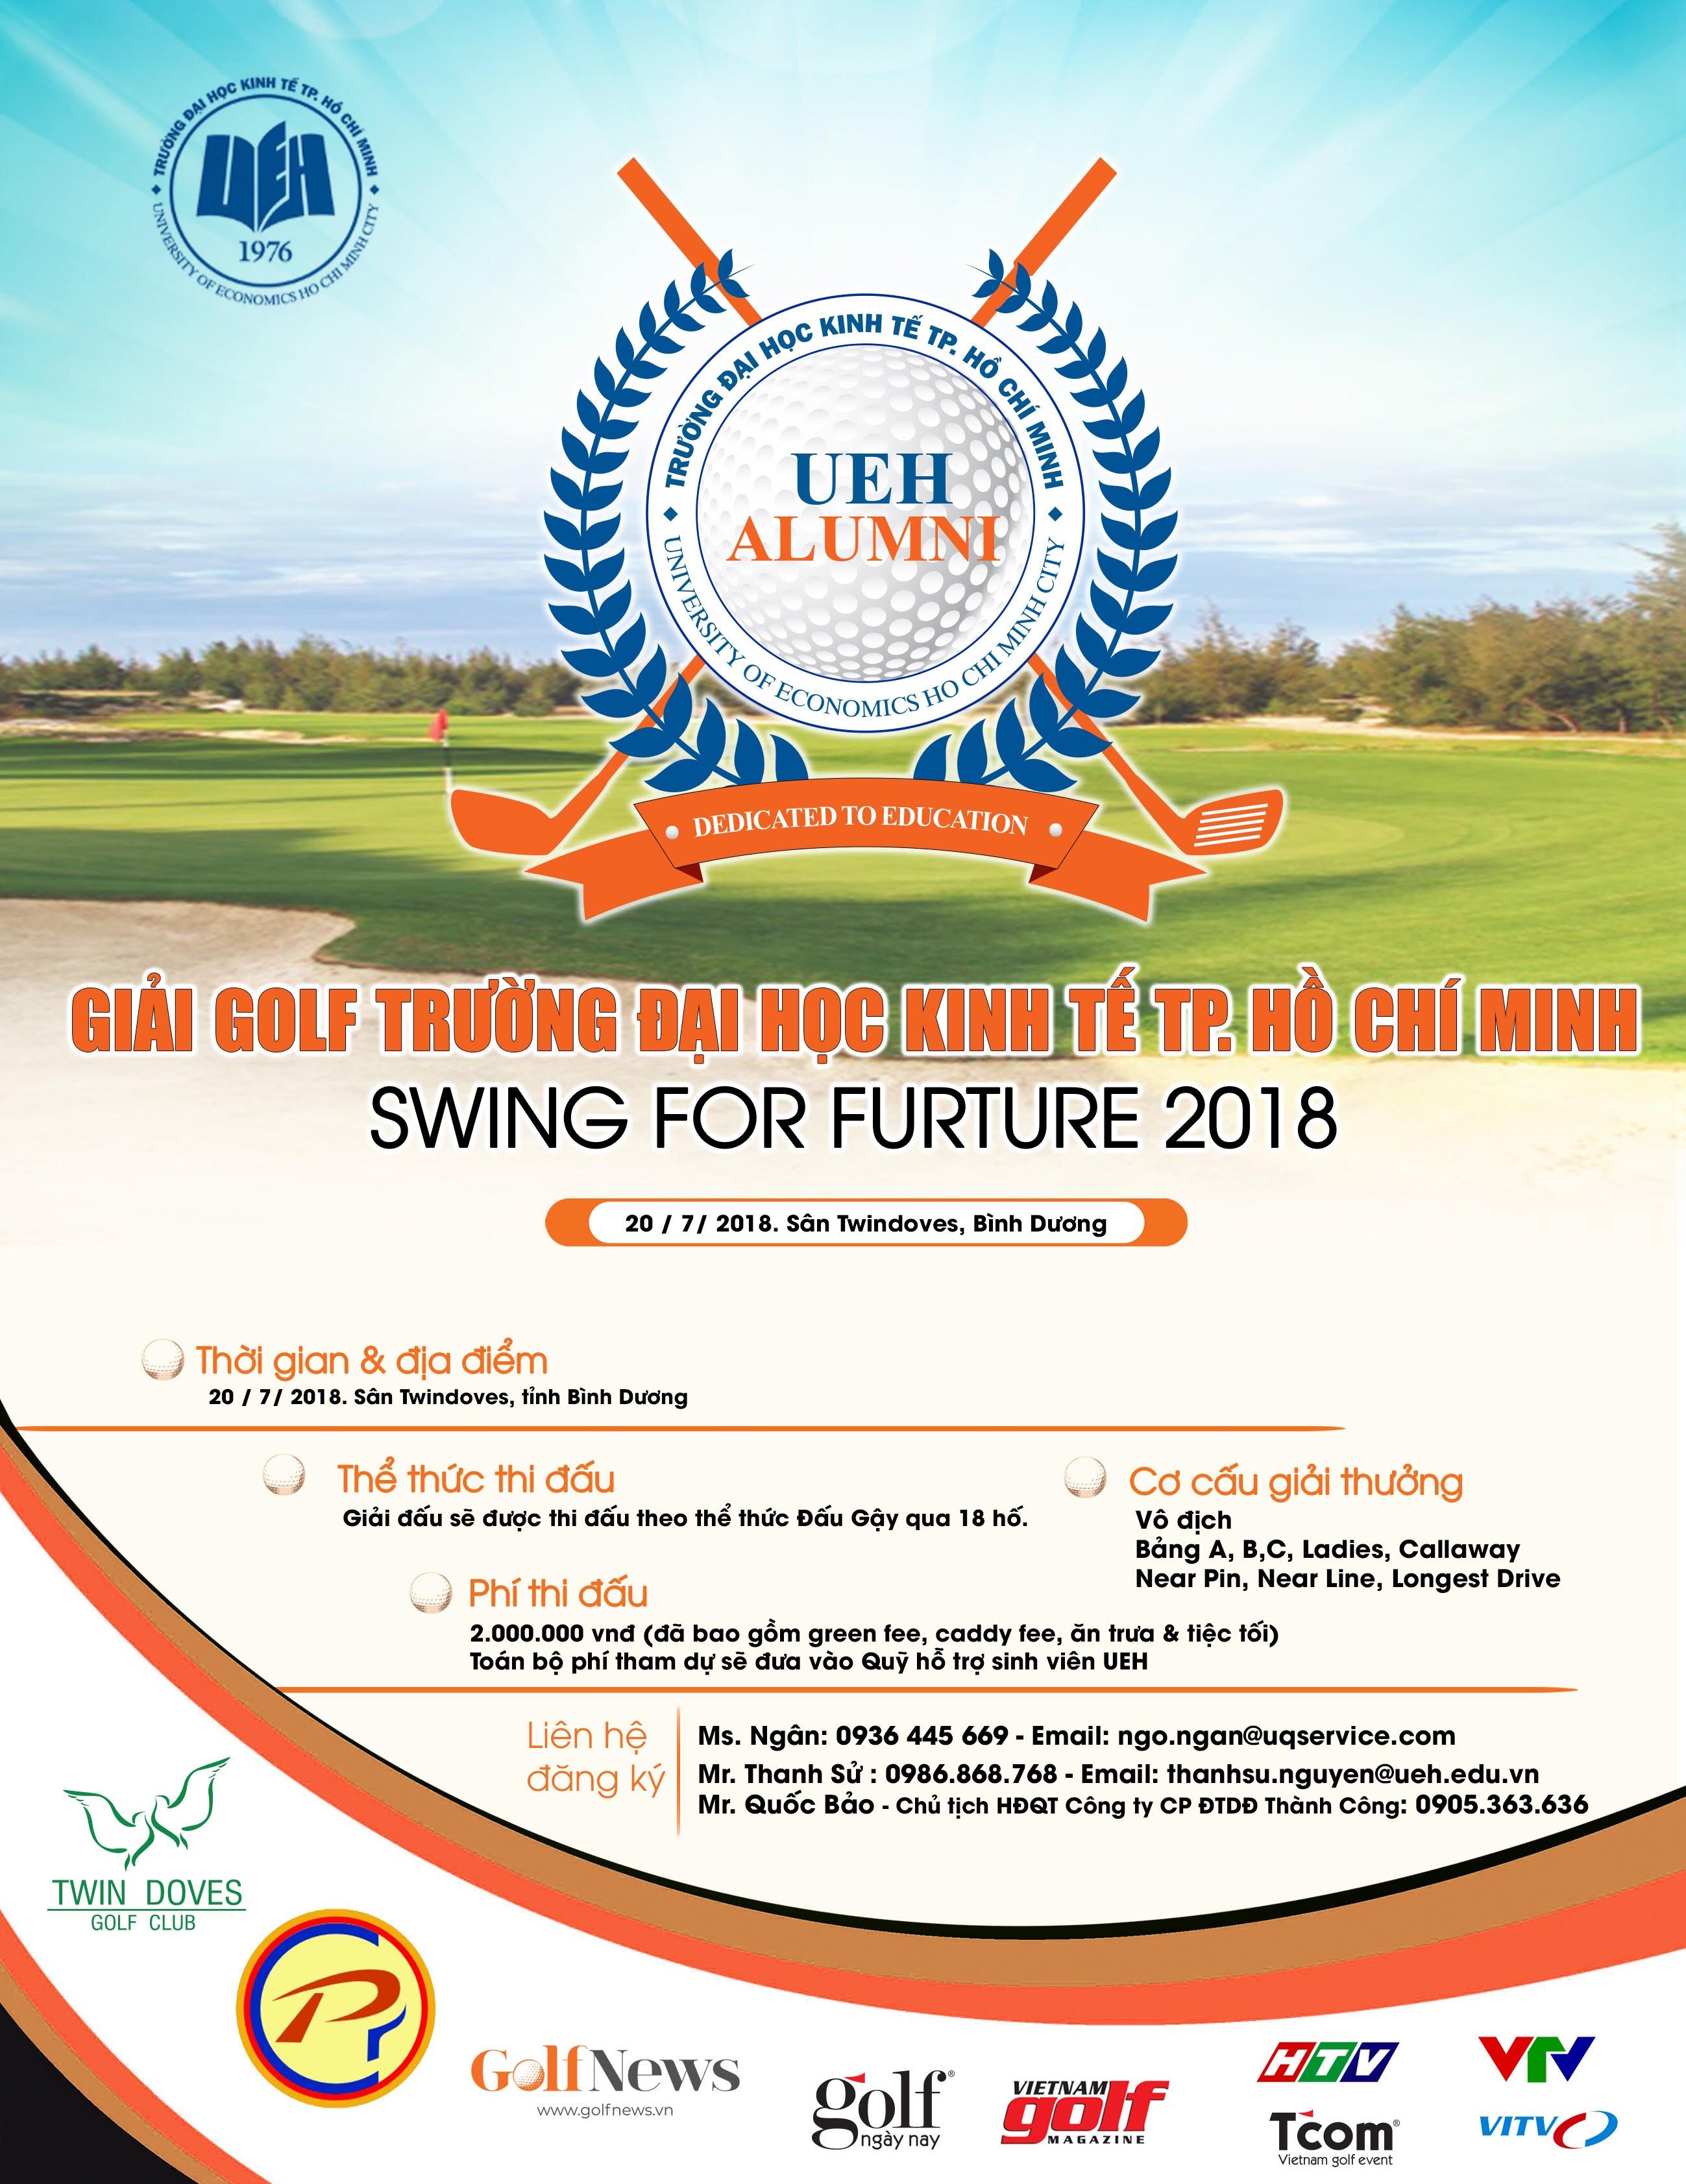 Giải UEH Golf - Swing for Furture 2018 chuẩn bị khởi tranh